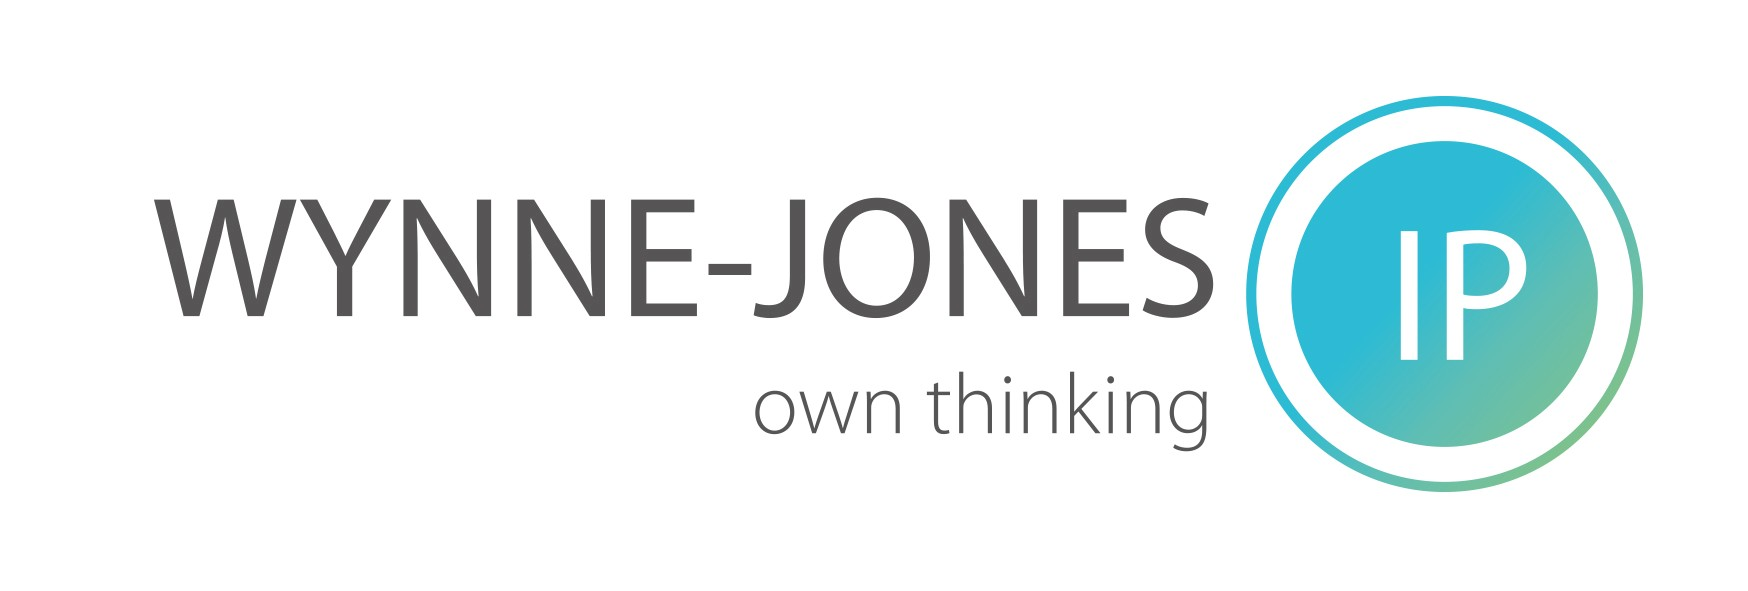 Wynne Jones IP